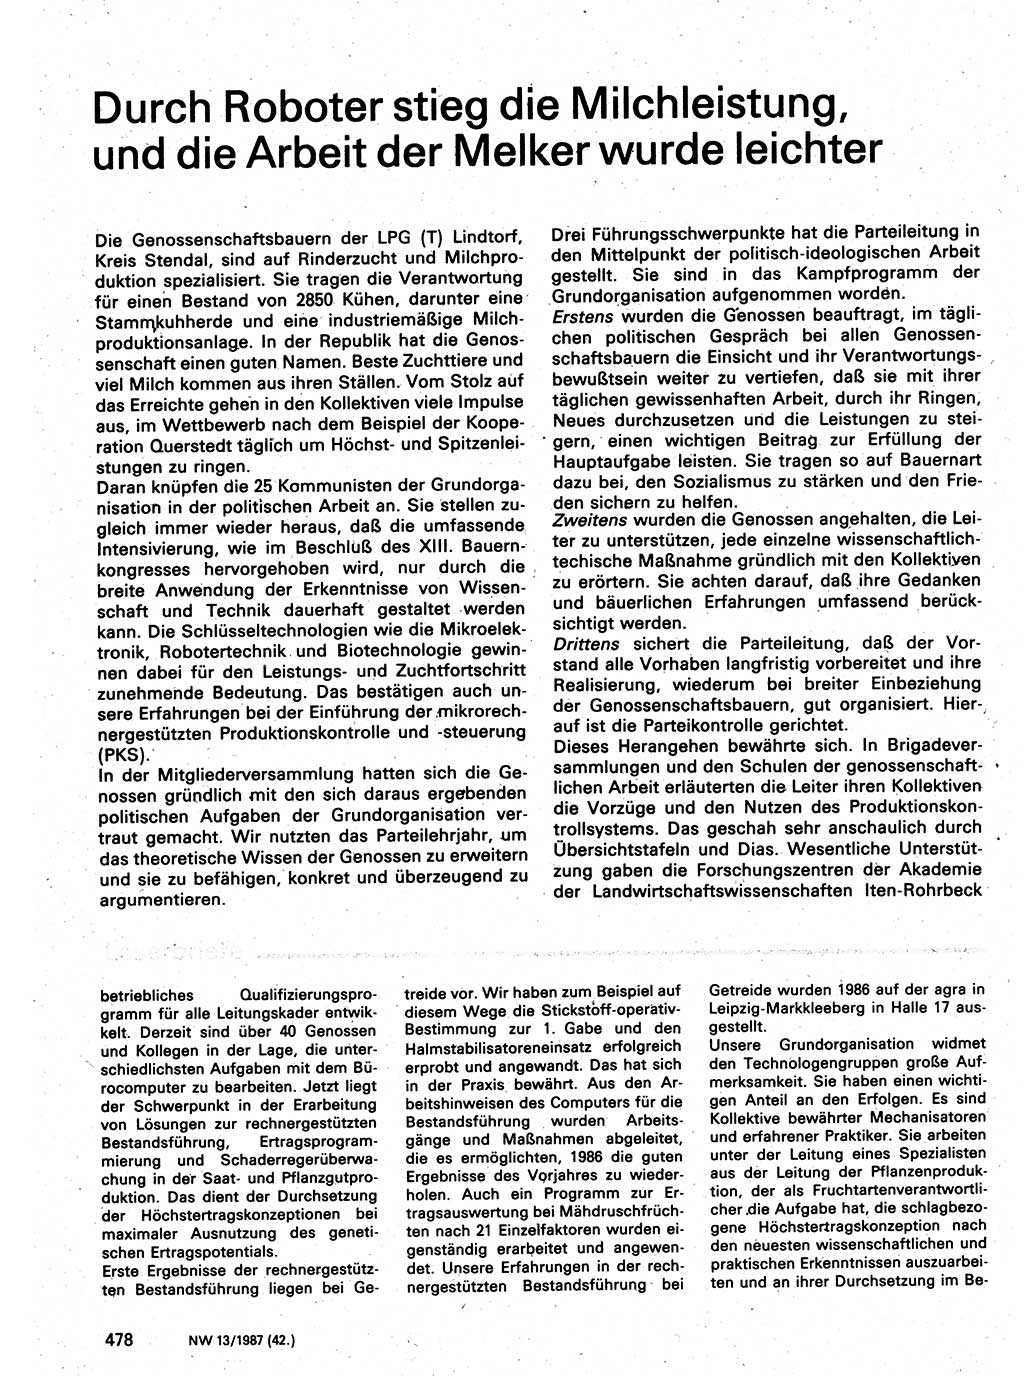 Neuer Weg (NW), Organ des Zentralkomitees (ZK) der SED (Sozialistische Einheitspartei Deutschlands) für Fragen des Parteilebens, 42. Jahrgang [Deutsche Demokratische Republik (DDR)] 1987, Seite 478 (NW ZK SED DDR 1987, S. 478)